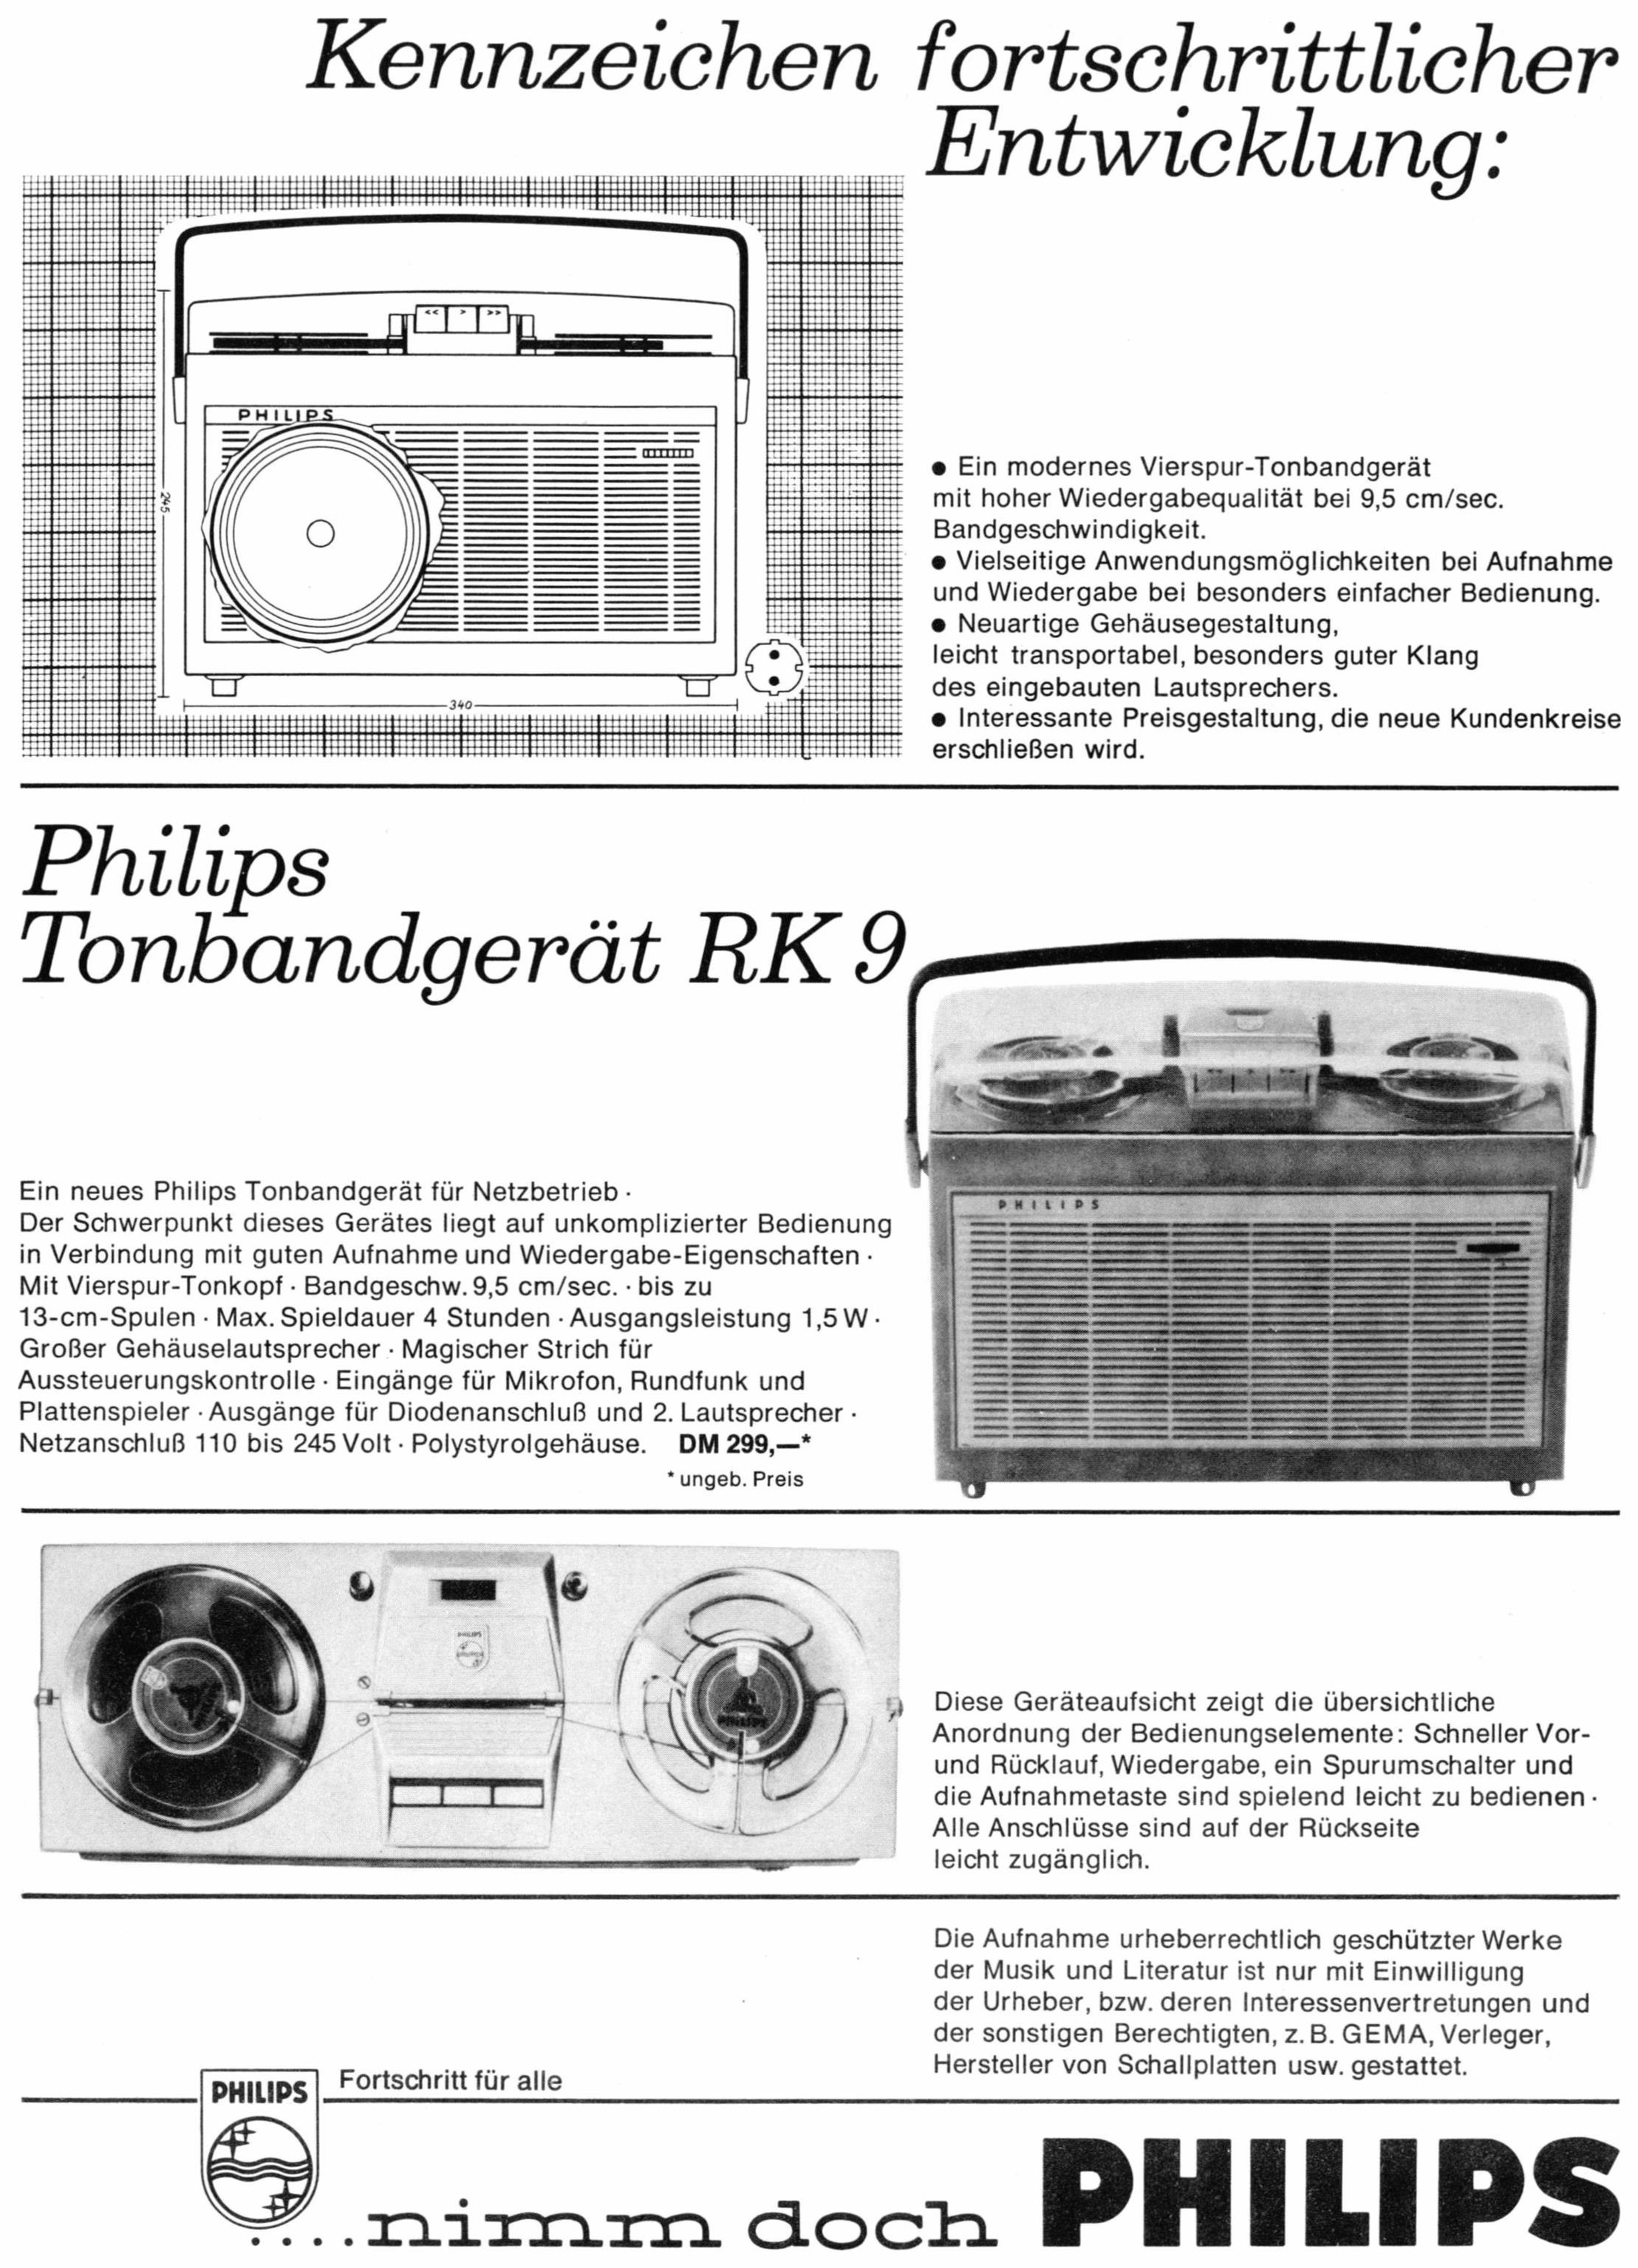 Philips 1961 02.jpg